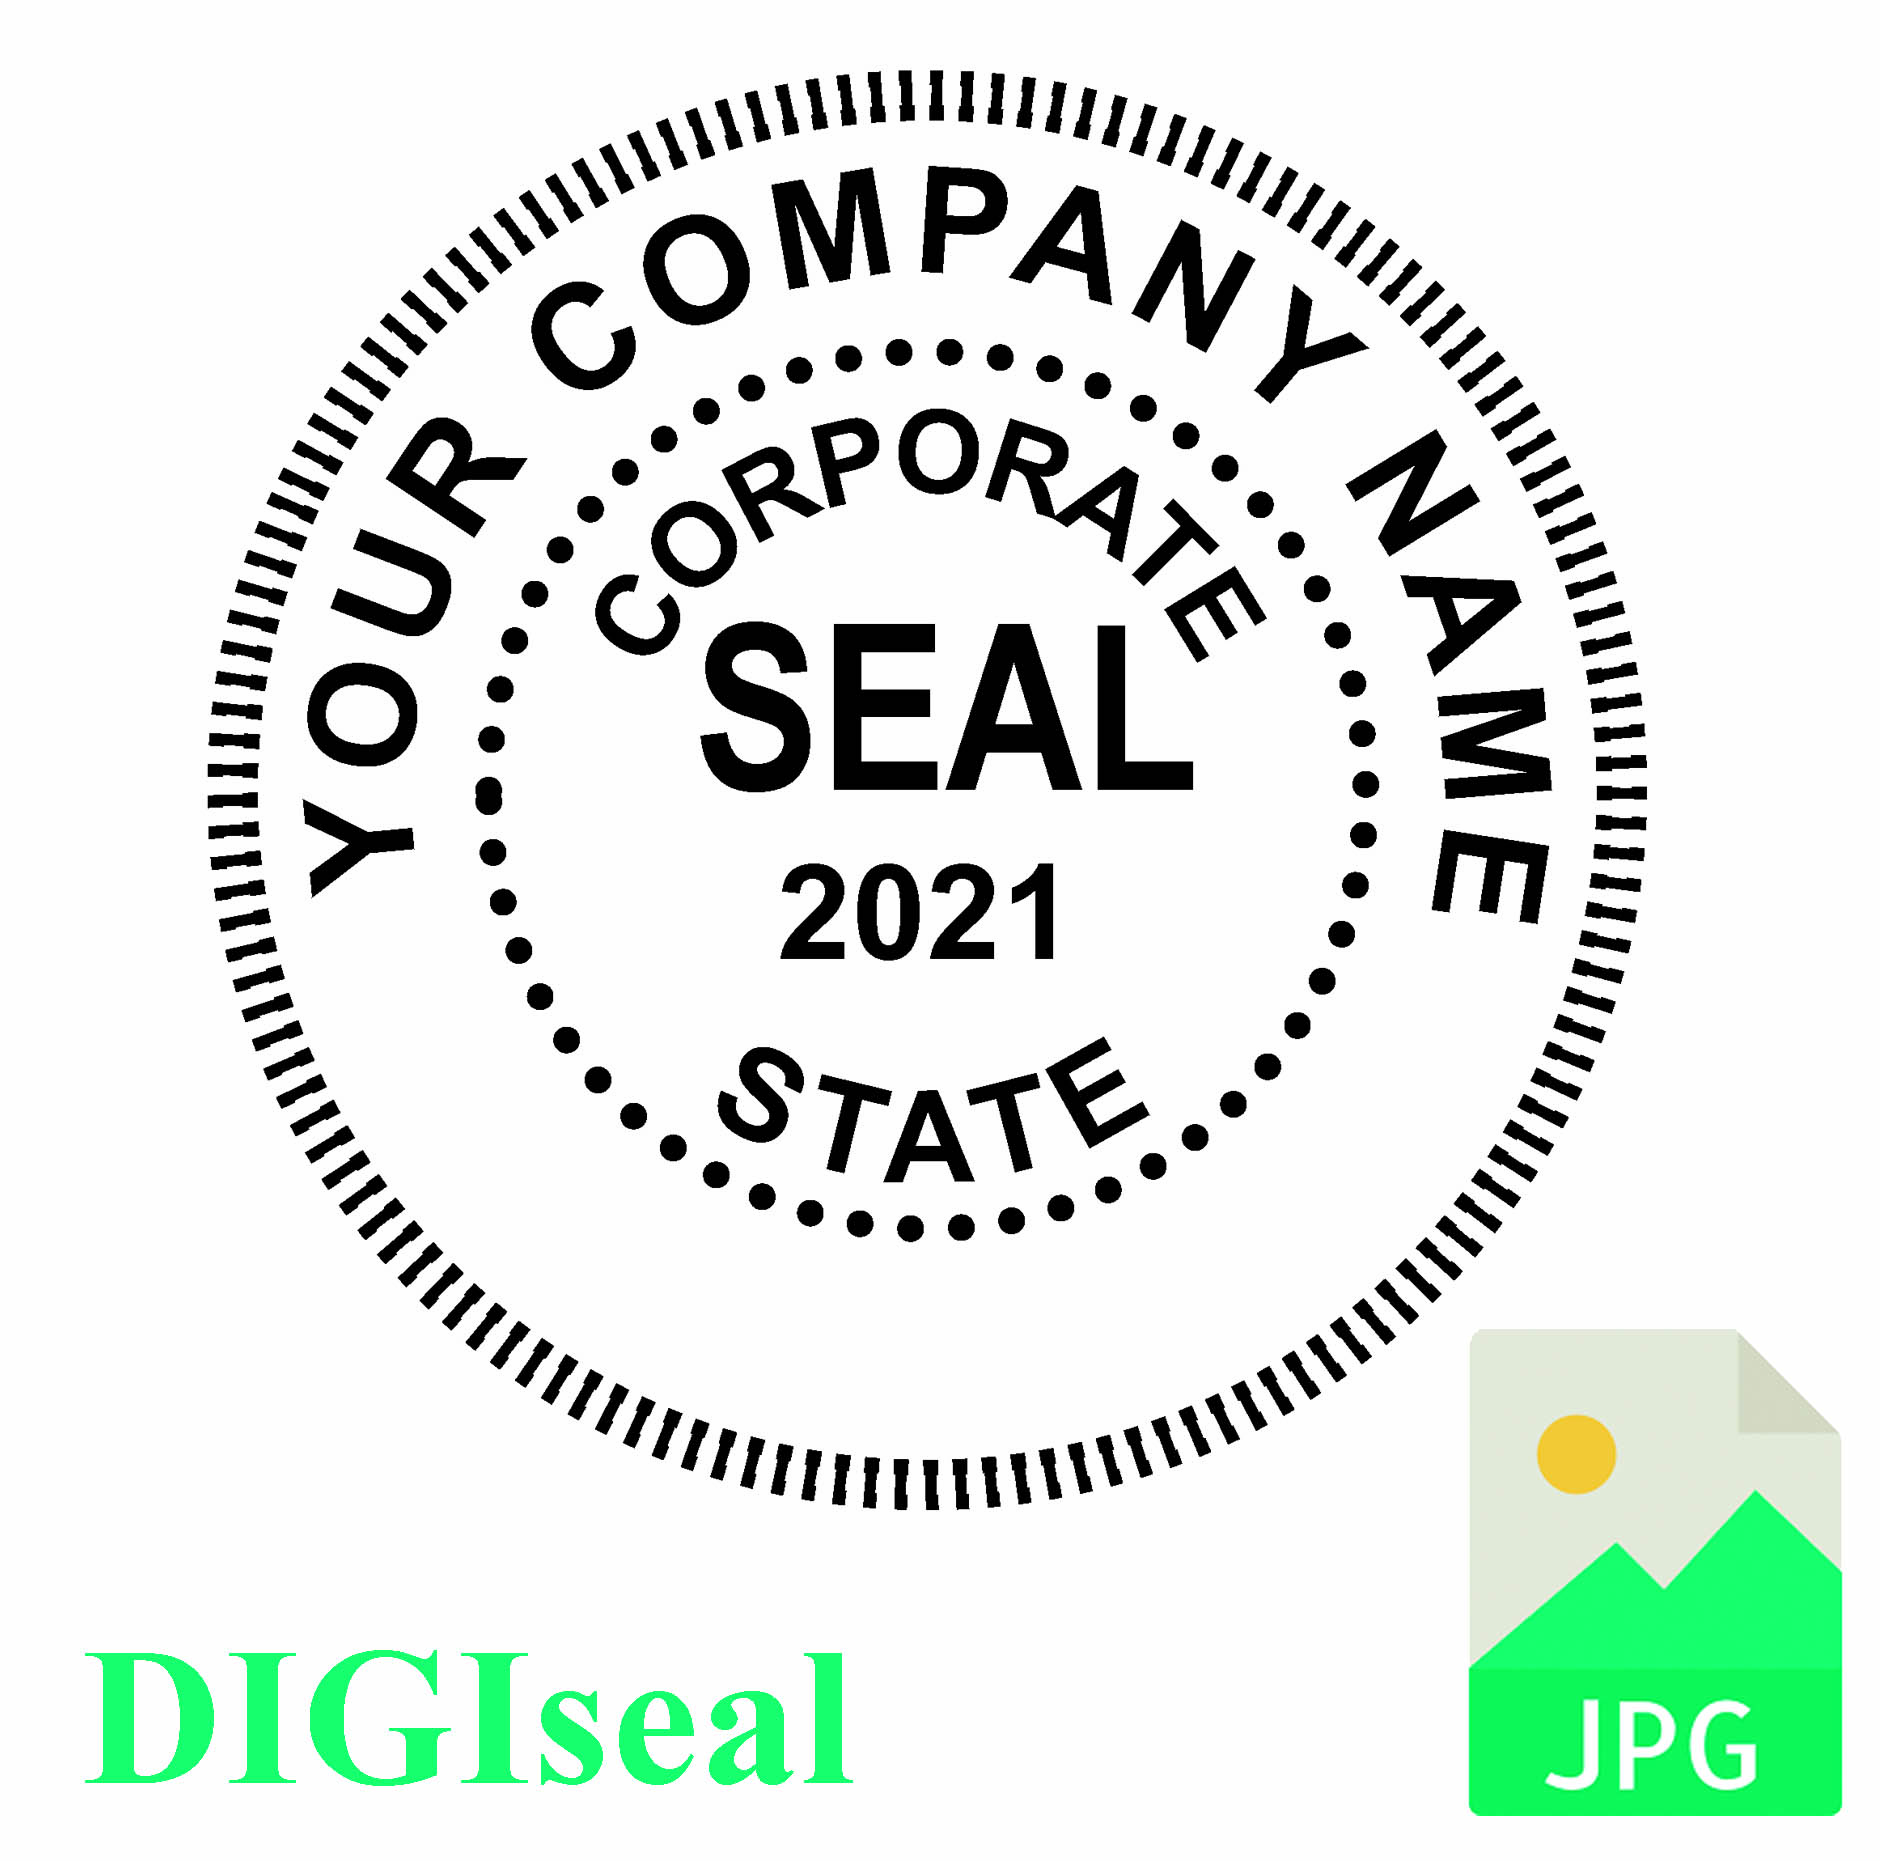 DIGIseal - Digital Corporate Seal